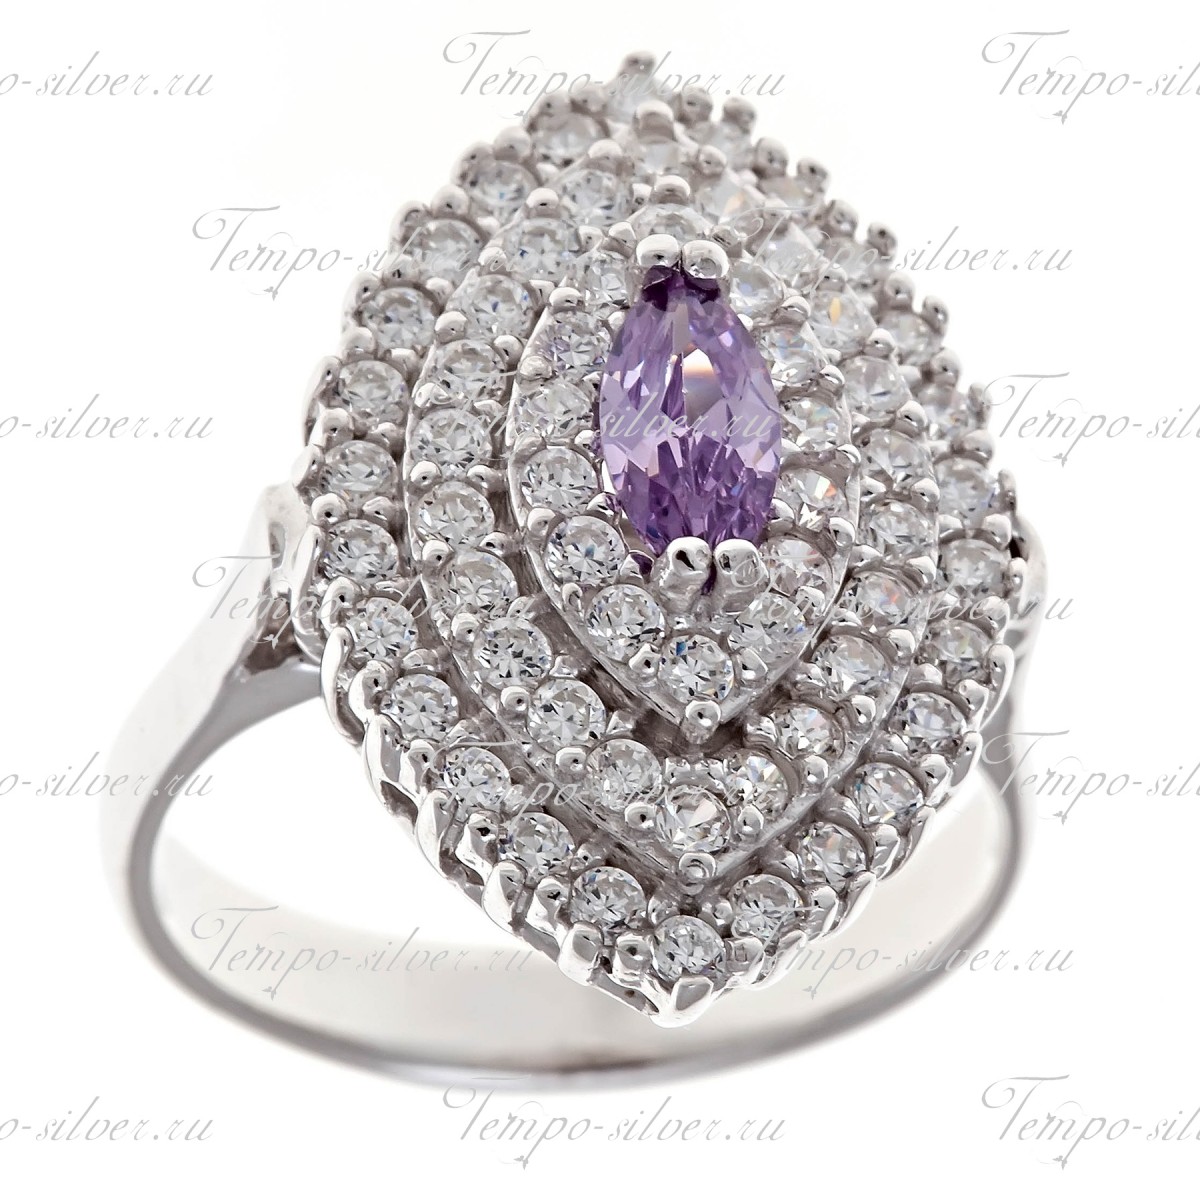 Кольцо серебряное формы маркиз с фиолетовым камнем в центре цена